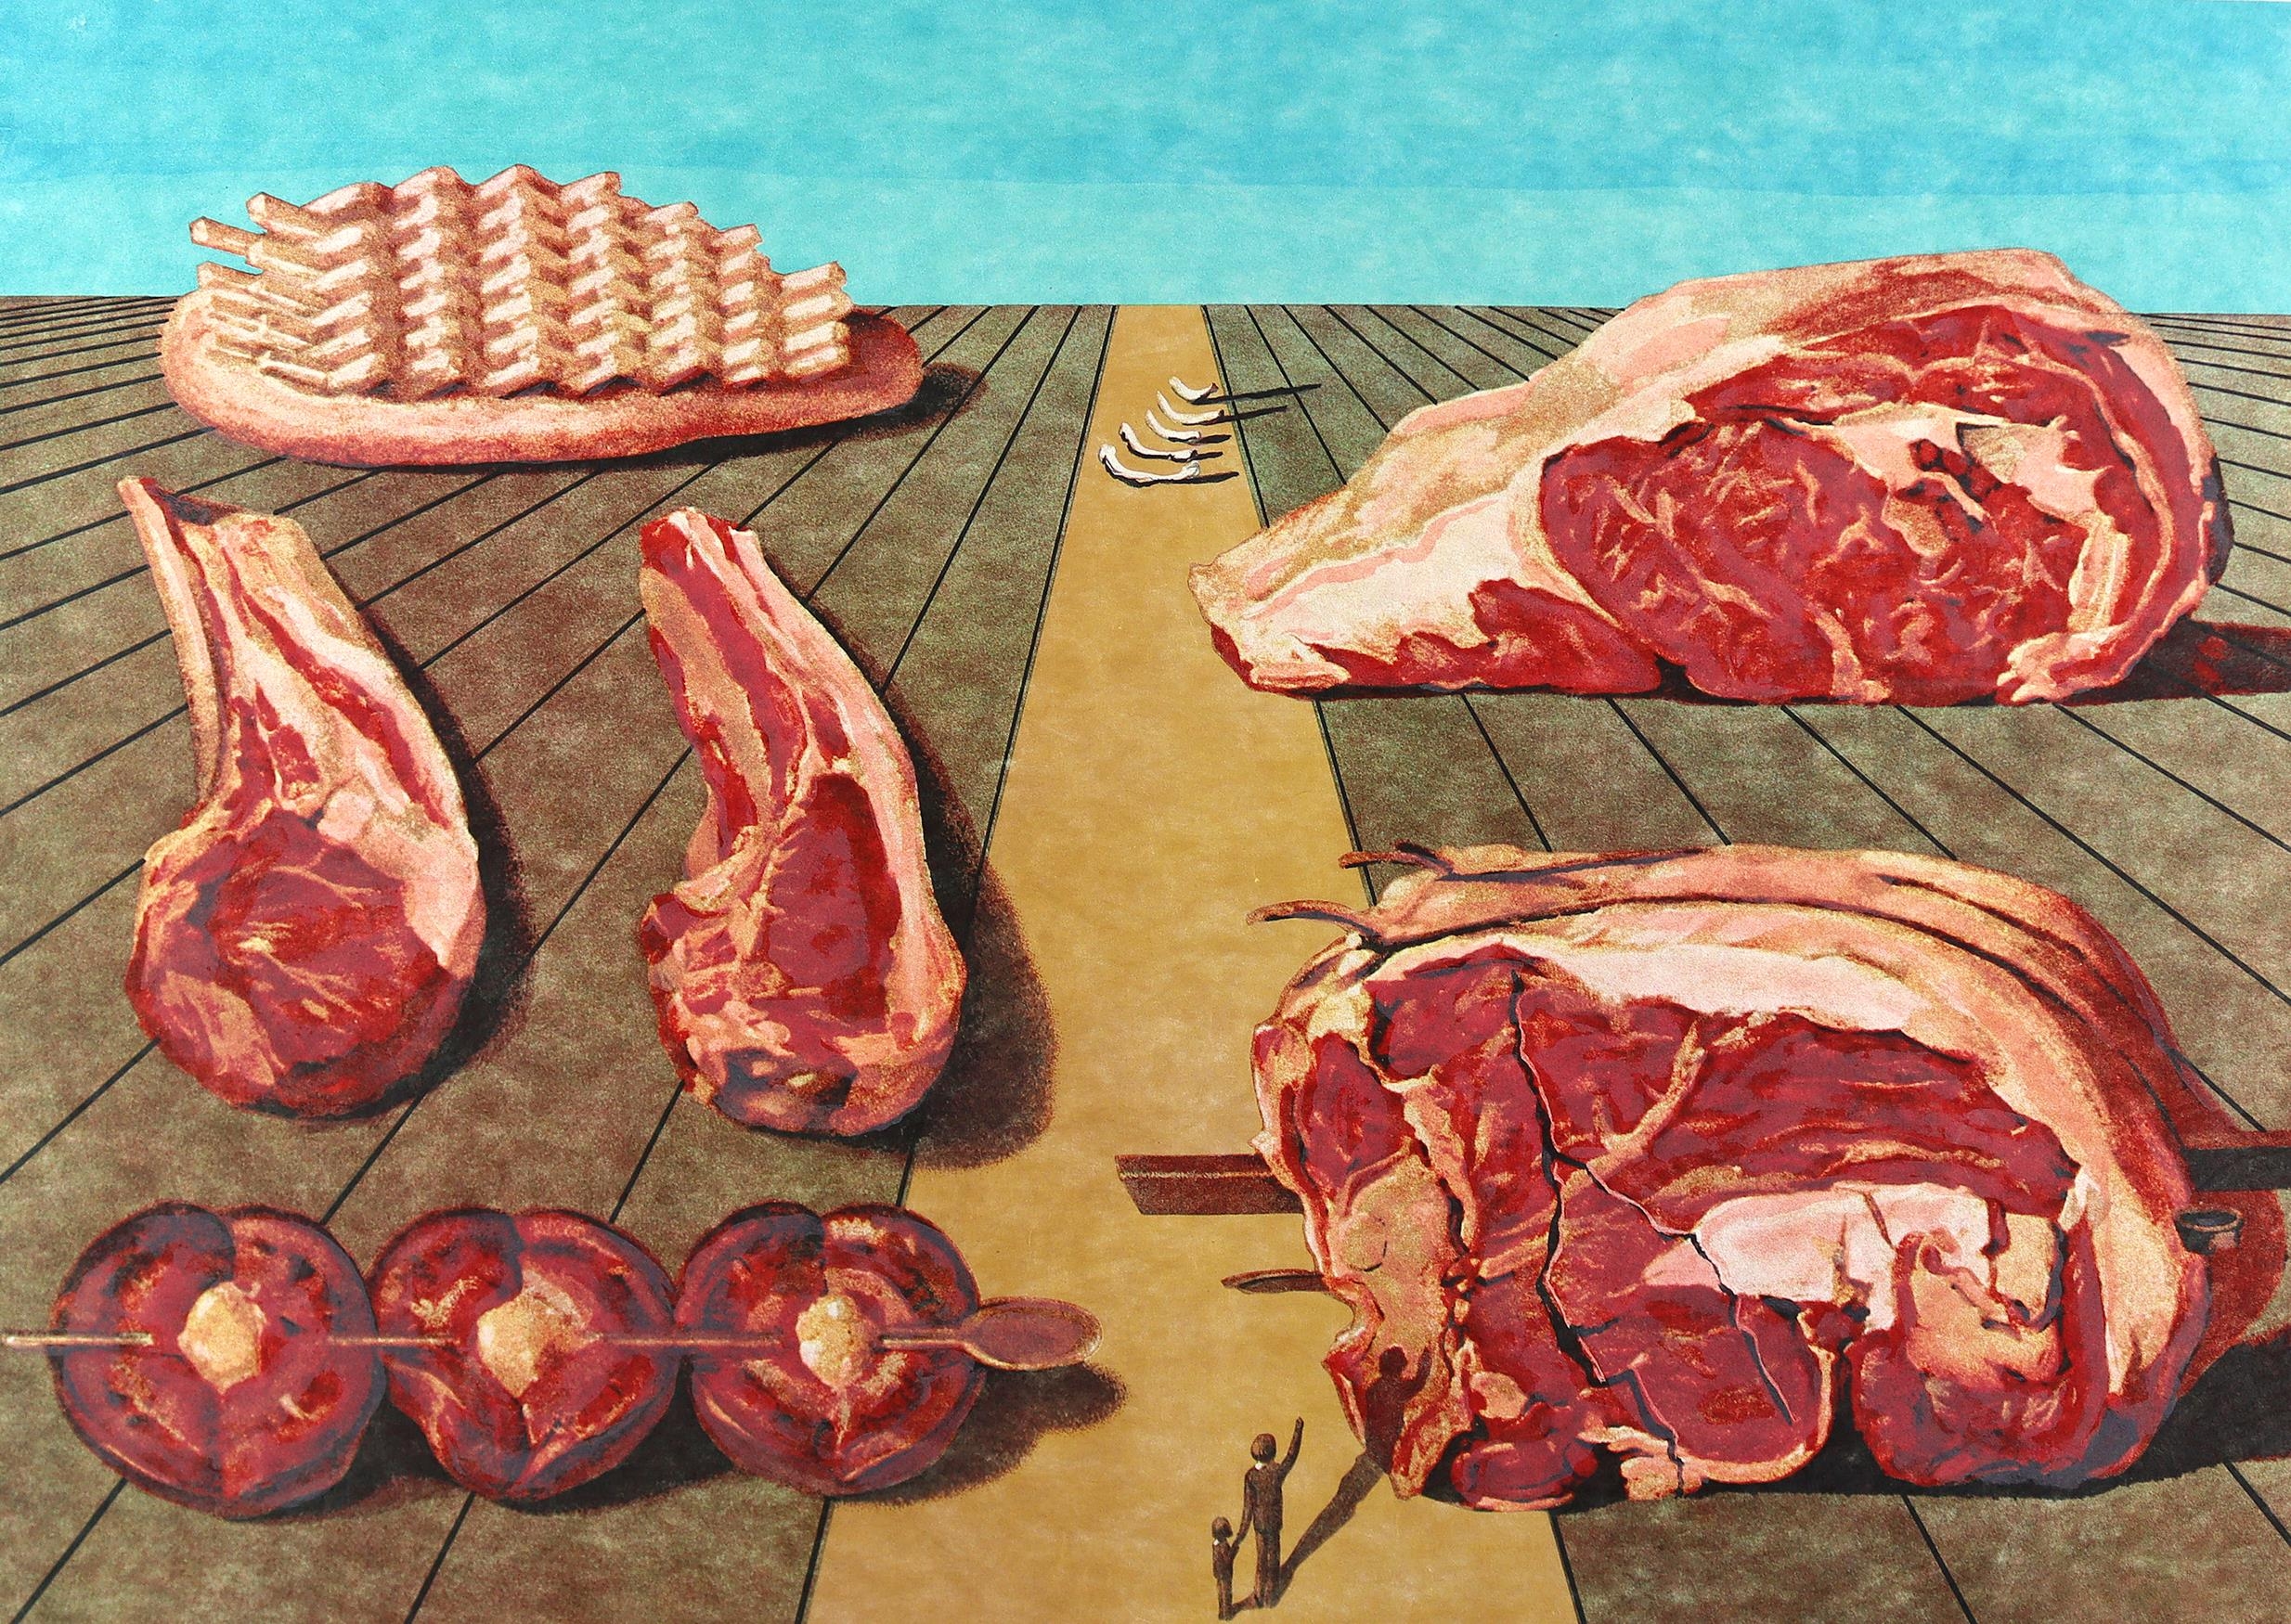 Les Diners de Gala: Les Entre-plats sodomisés by Salvador Dalí, 1971